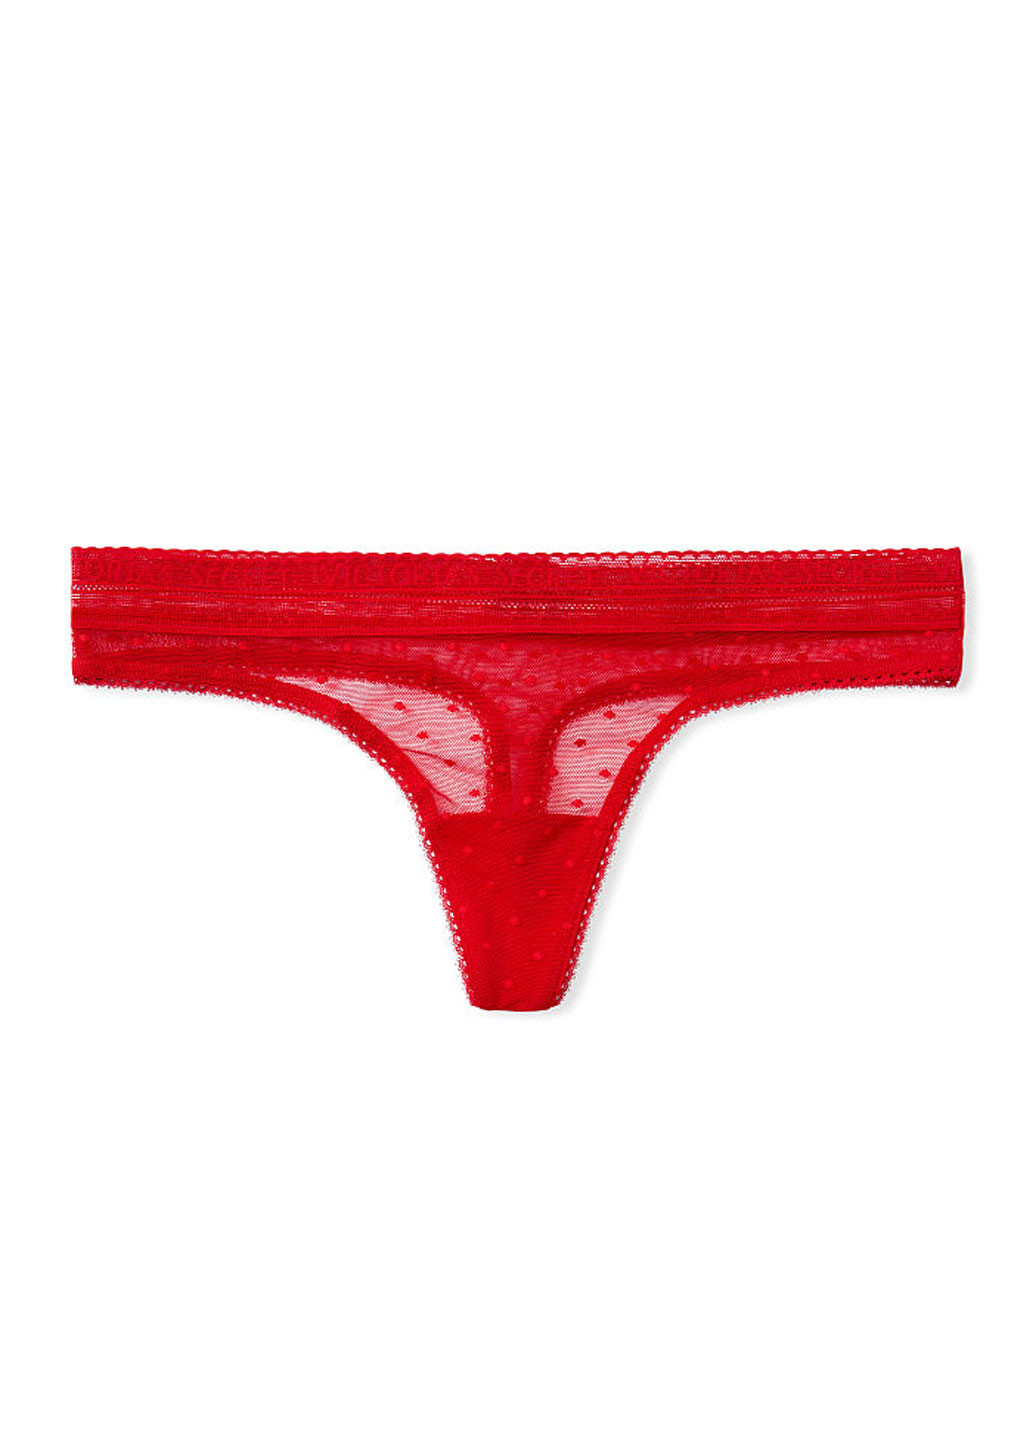 Трусы Victoria's Secret стринги горошки красные повседневные трикотаж, полиамид